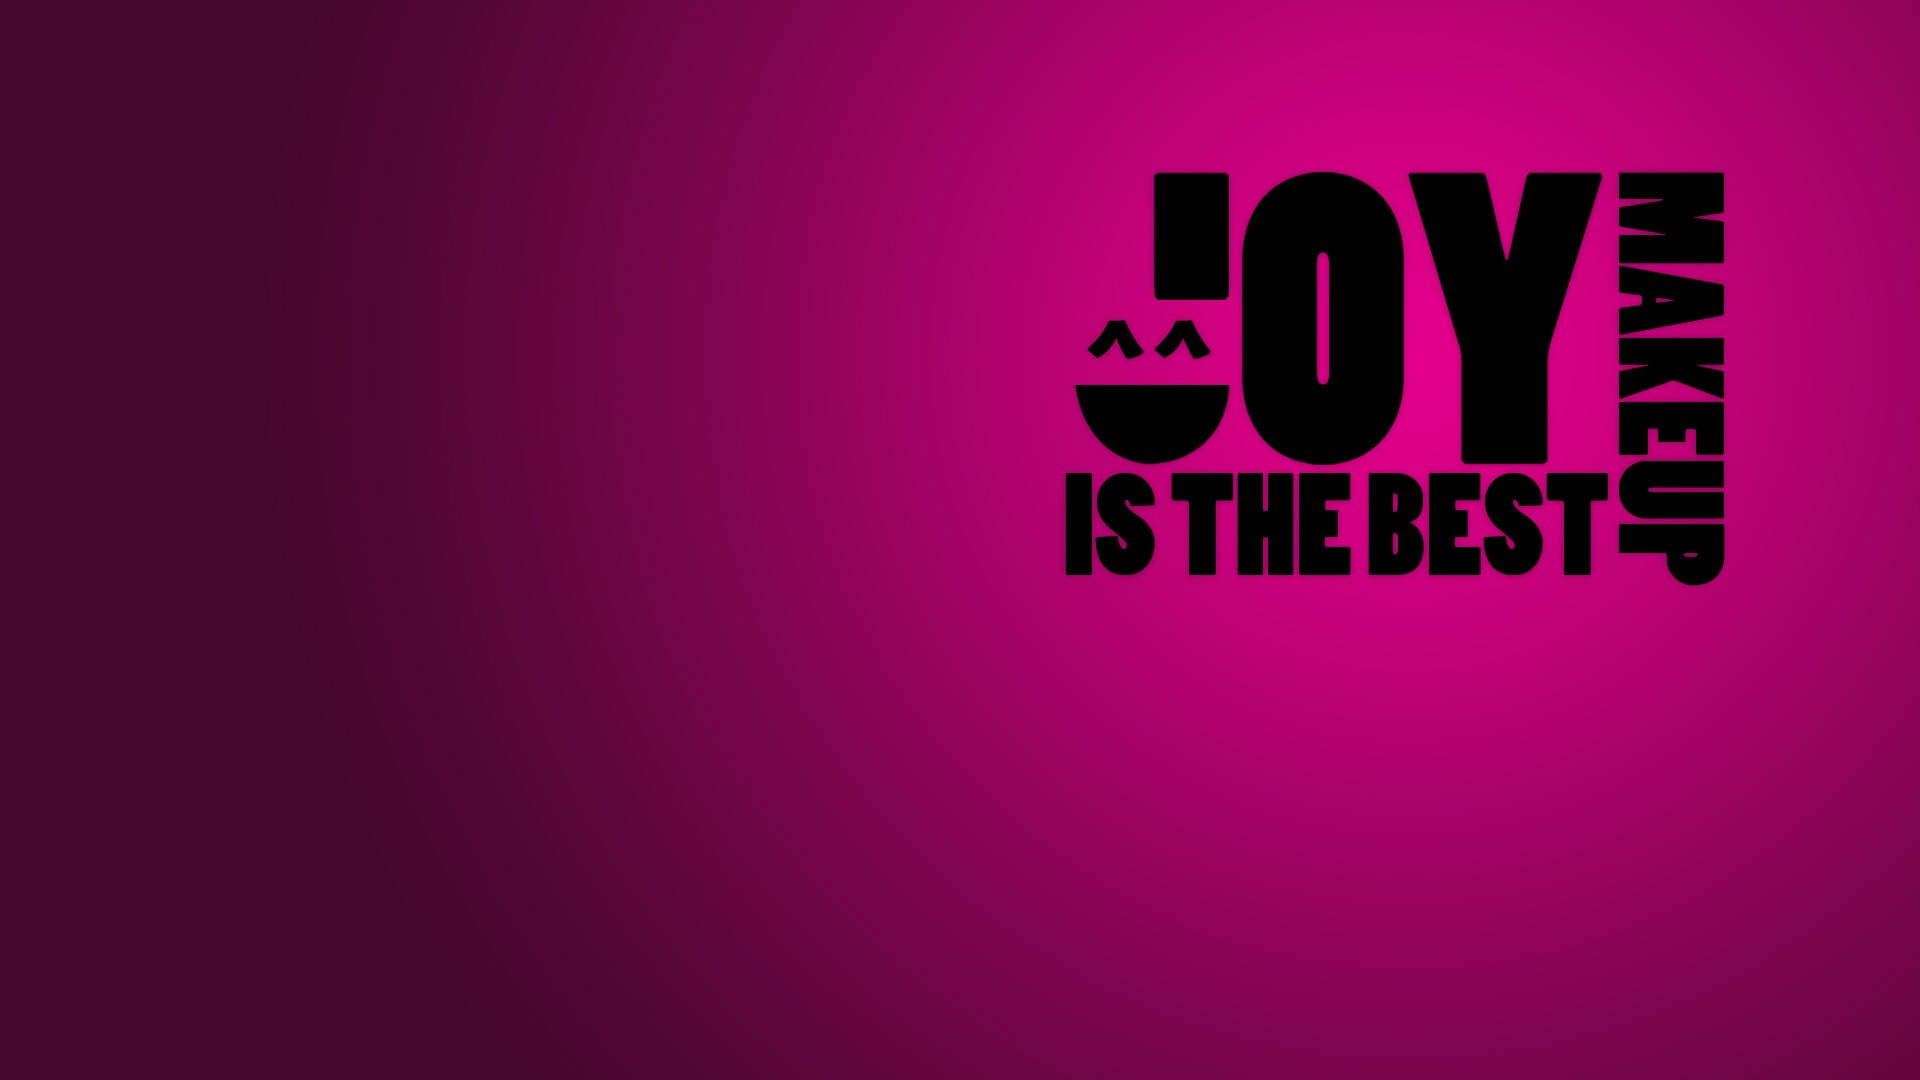 Joy Is The Best